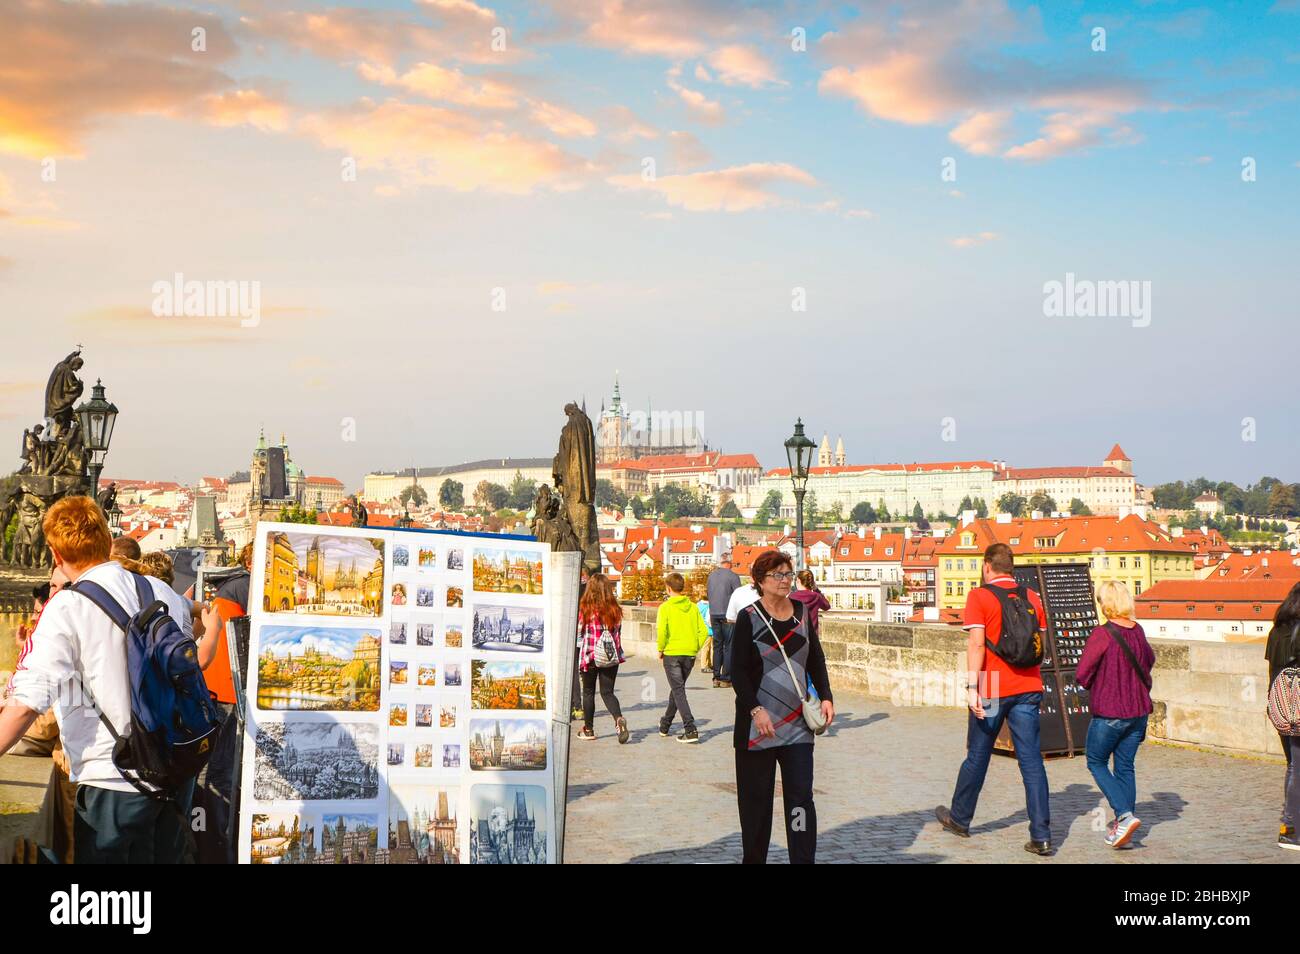 Die St.-Veits-Kathedrale und der Schlosskomplex im Blick, wenn Touristen an Straßenkünstlern und Statuen auf der Karlsbrücke in Prag, Tschechien vorbeikommen. Stockfoto